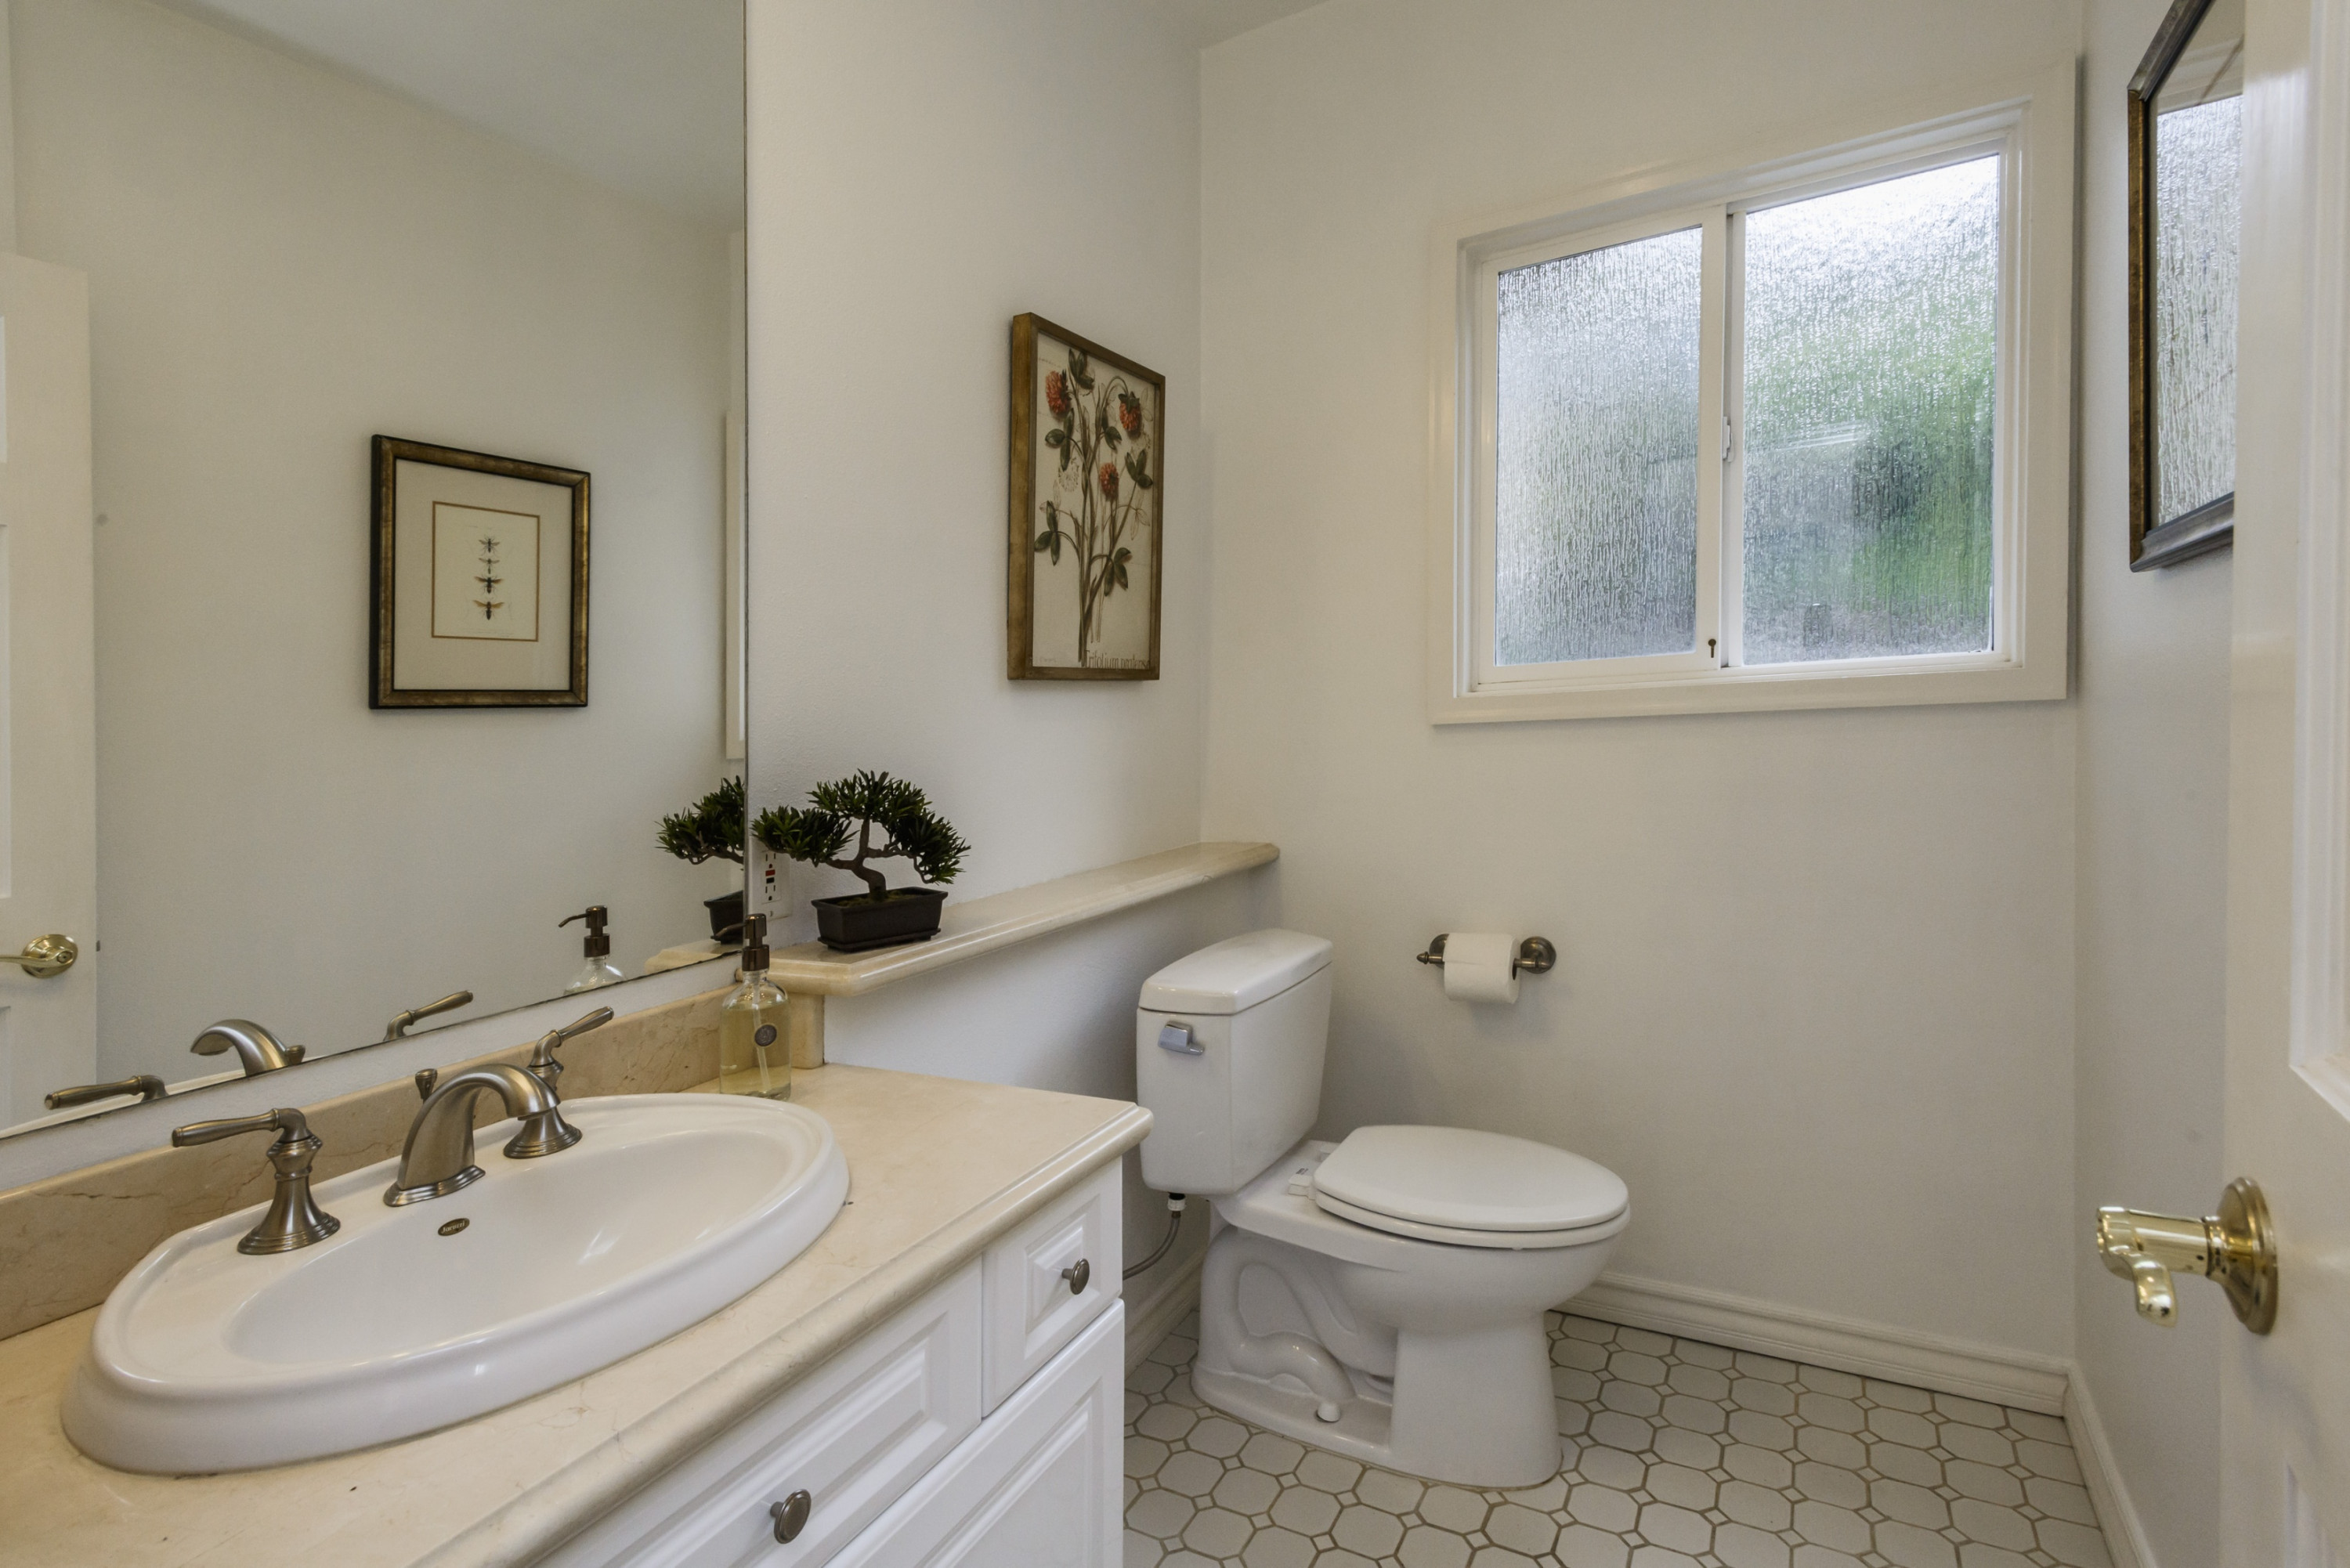 2930 Adeline Drive Bathroom Mirror in Burlingame Hills Neighborhood in Burlingame.